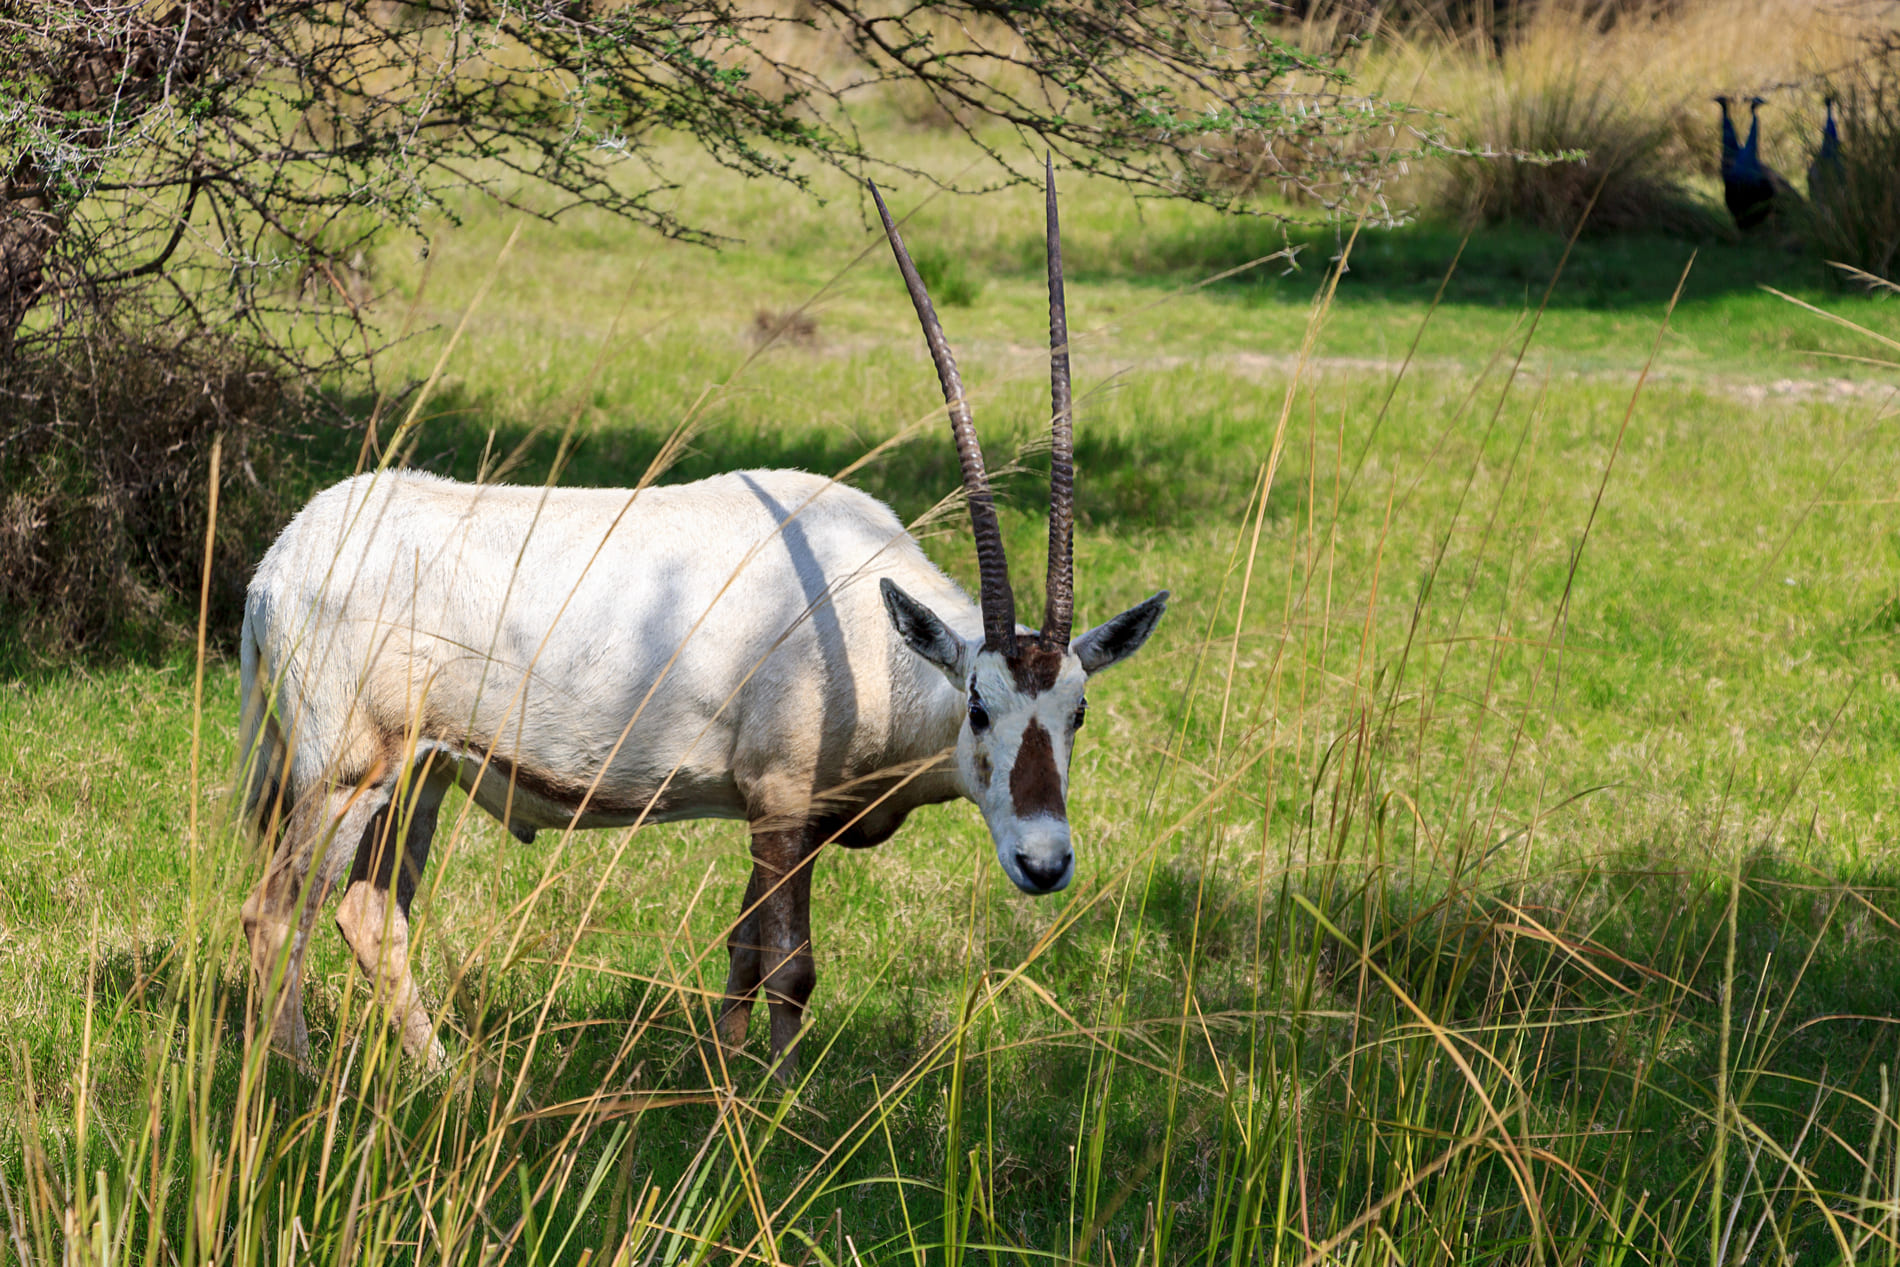 arabian-oryx-white-oryx-oryx-leucoryx-medium-sized-antelope-with-long-straight-horns-tufted-tail-natural-habitat-uae(1)